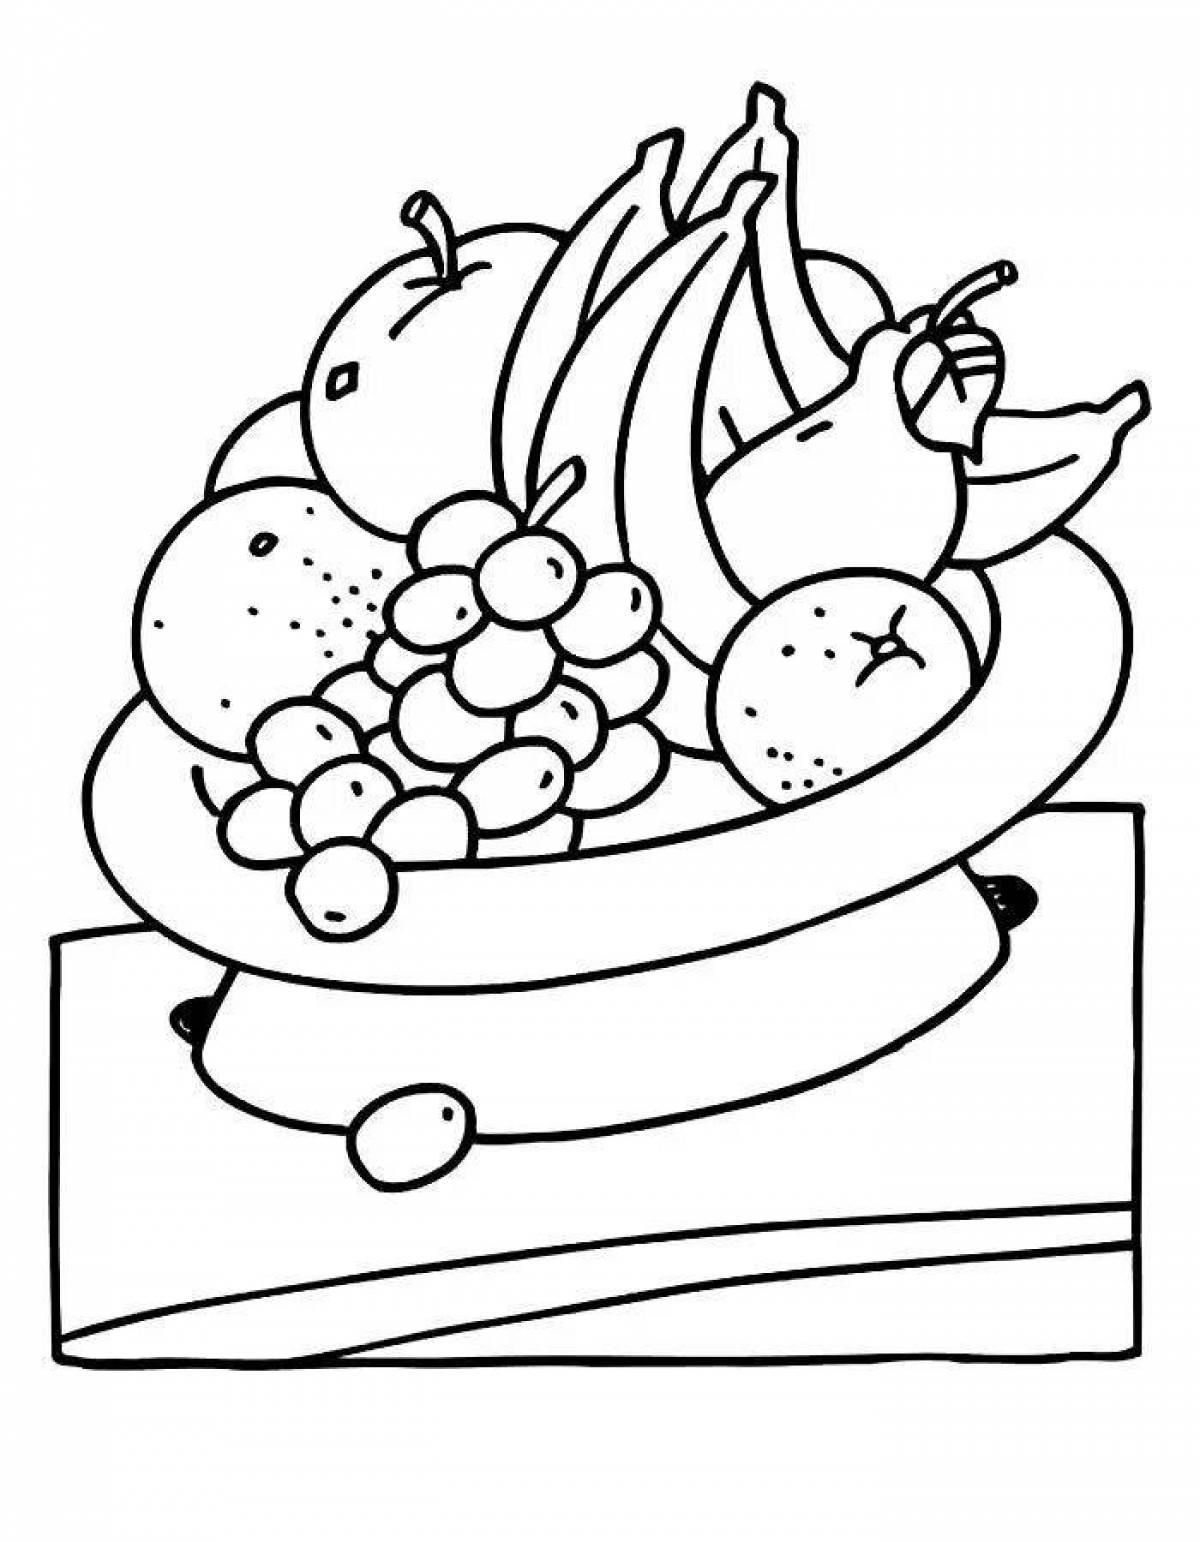 Привлекательный натюрморт из овощей и фруктов для дошкольников